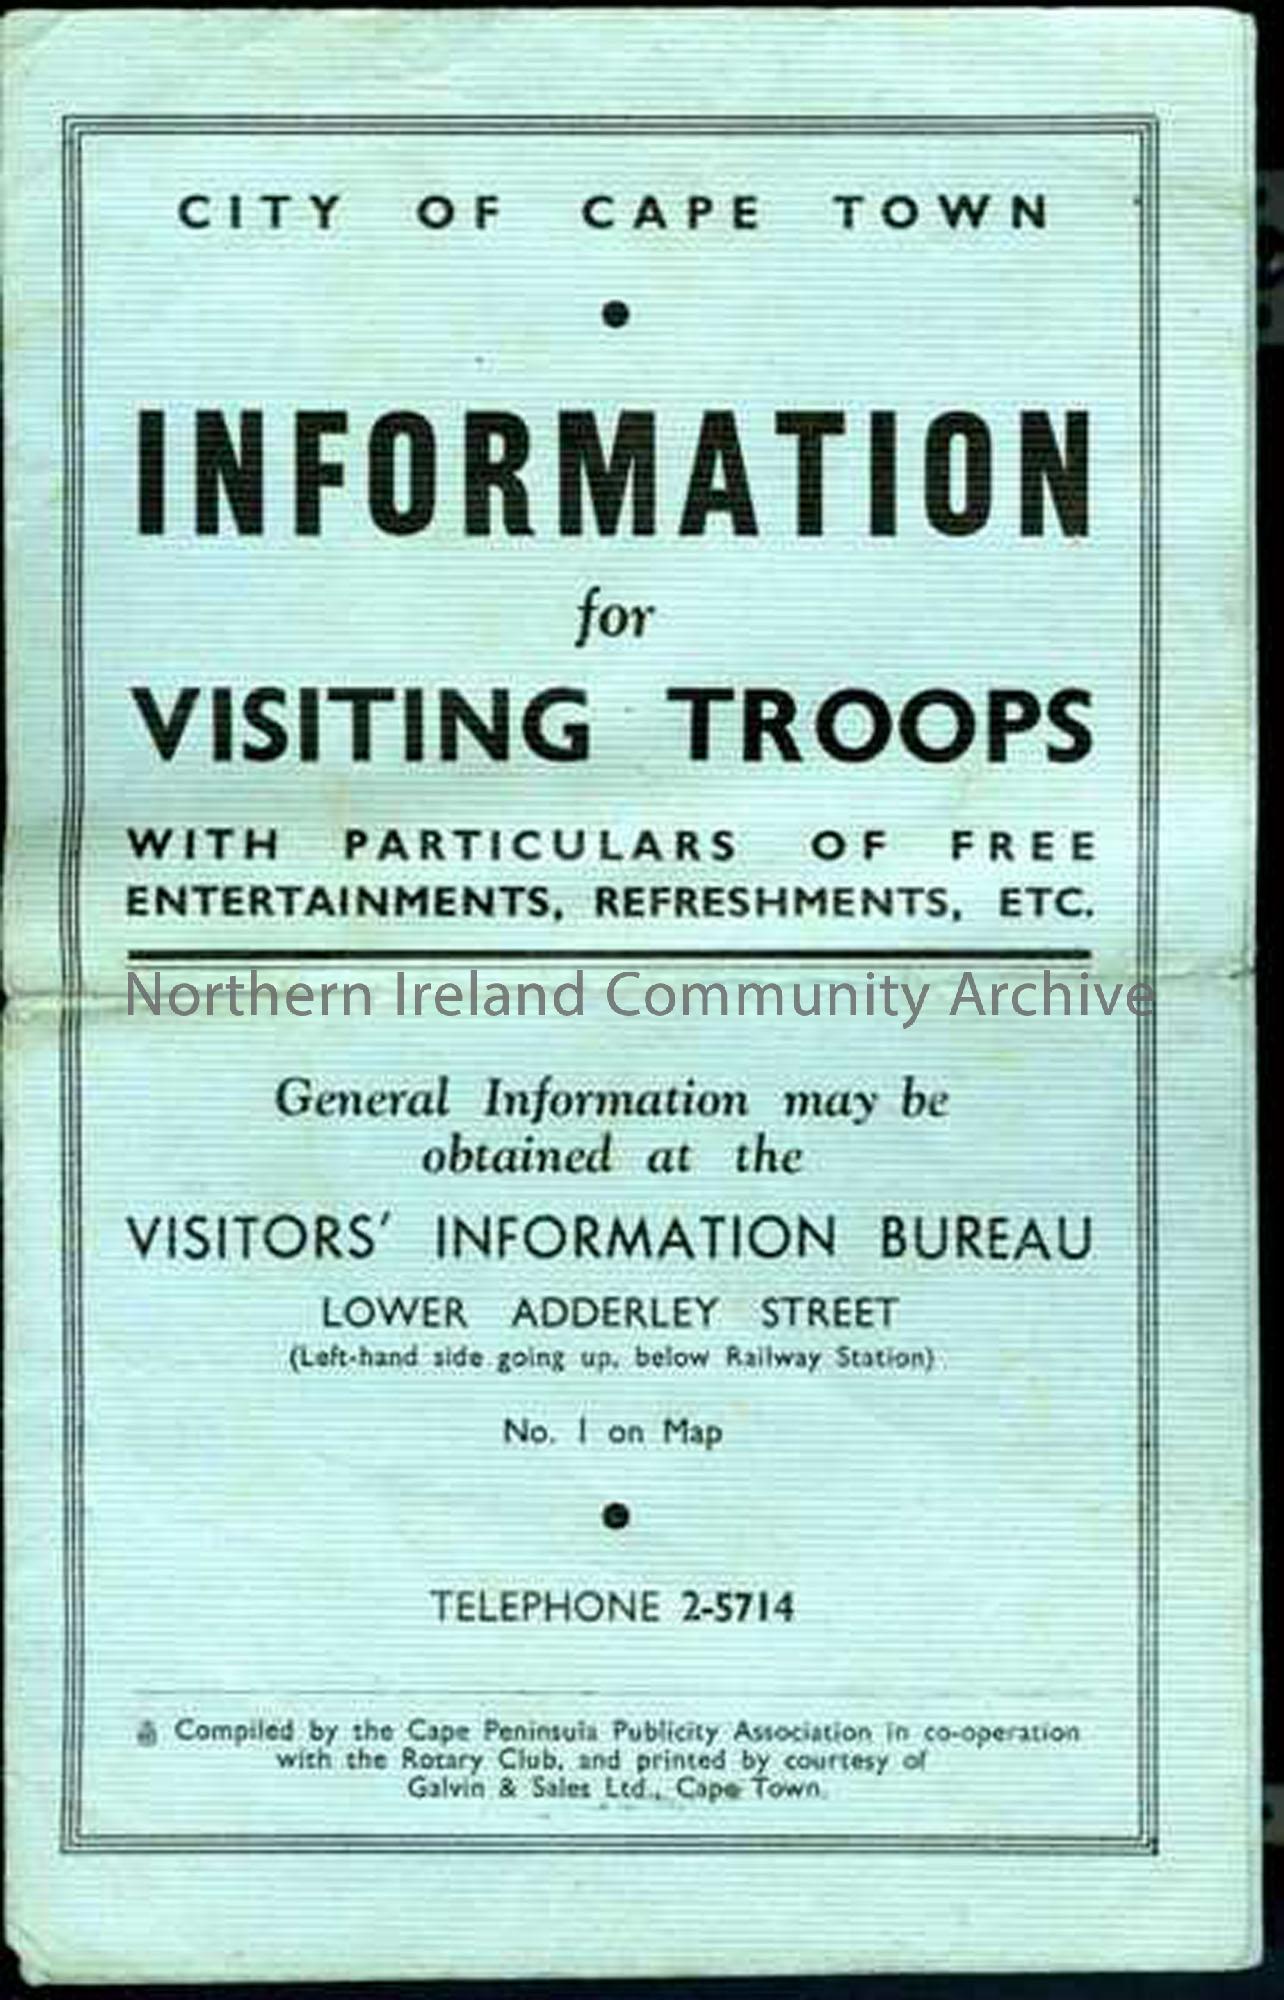 ‘Information for Visiting Troops’ leaflet